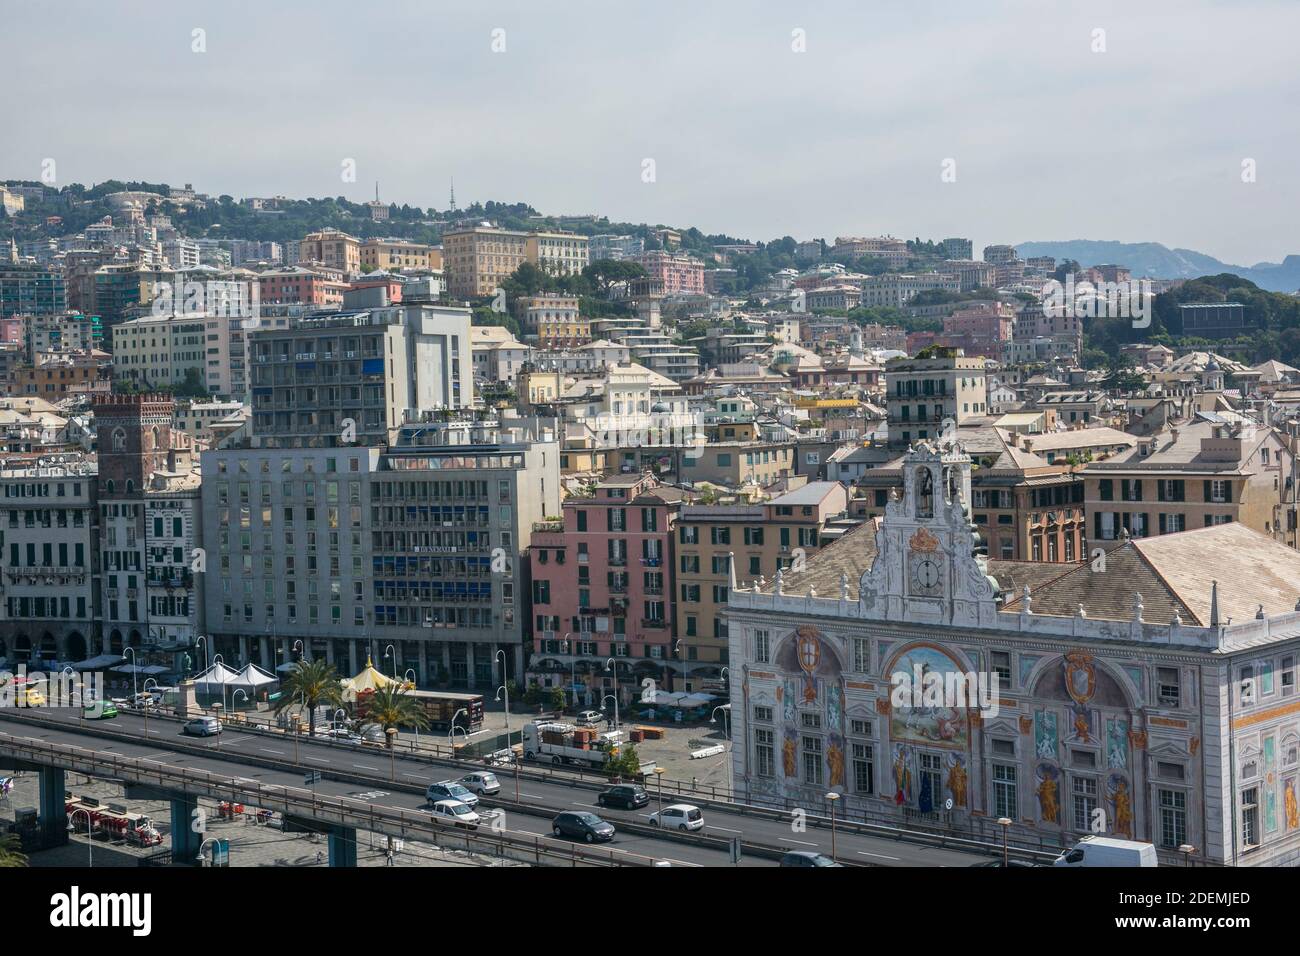 Die Altstadt von Genua und die älteste Bank Europas Stockfoto